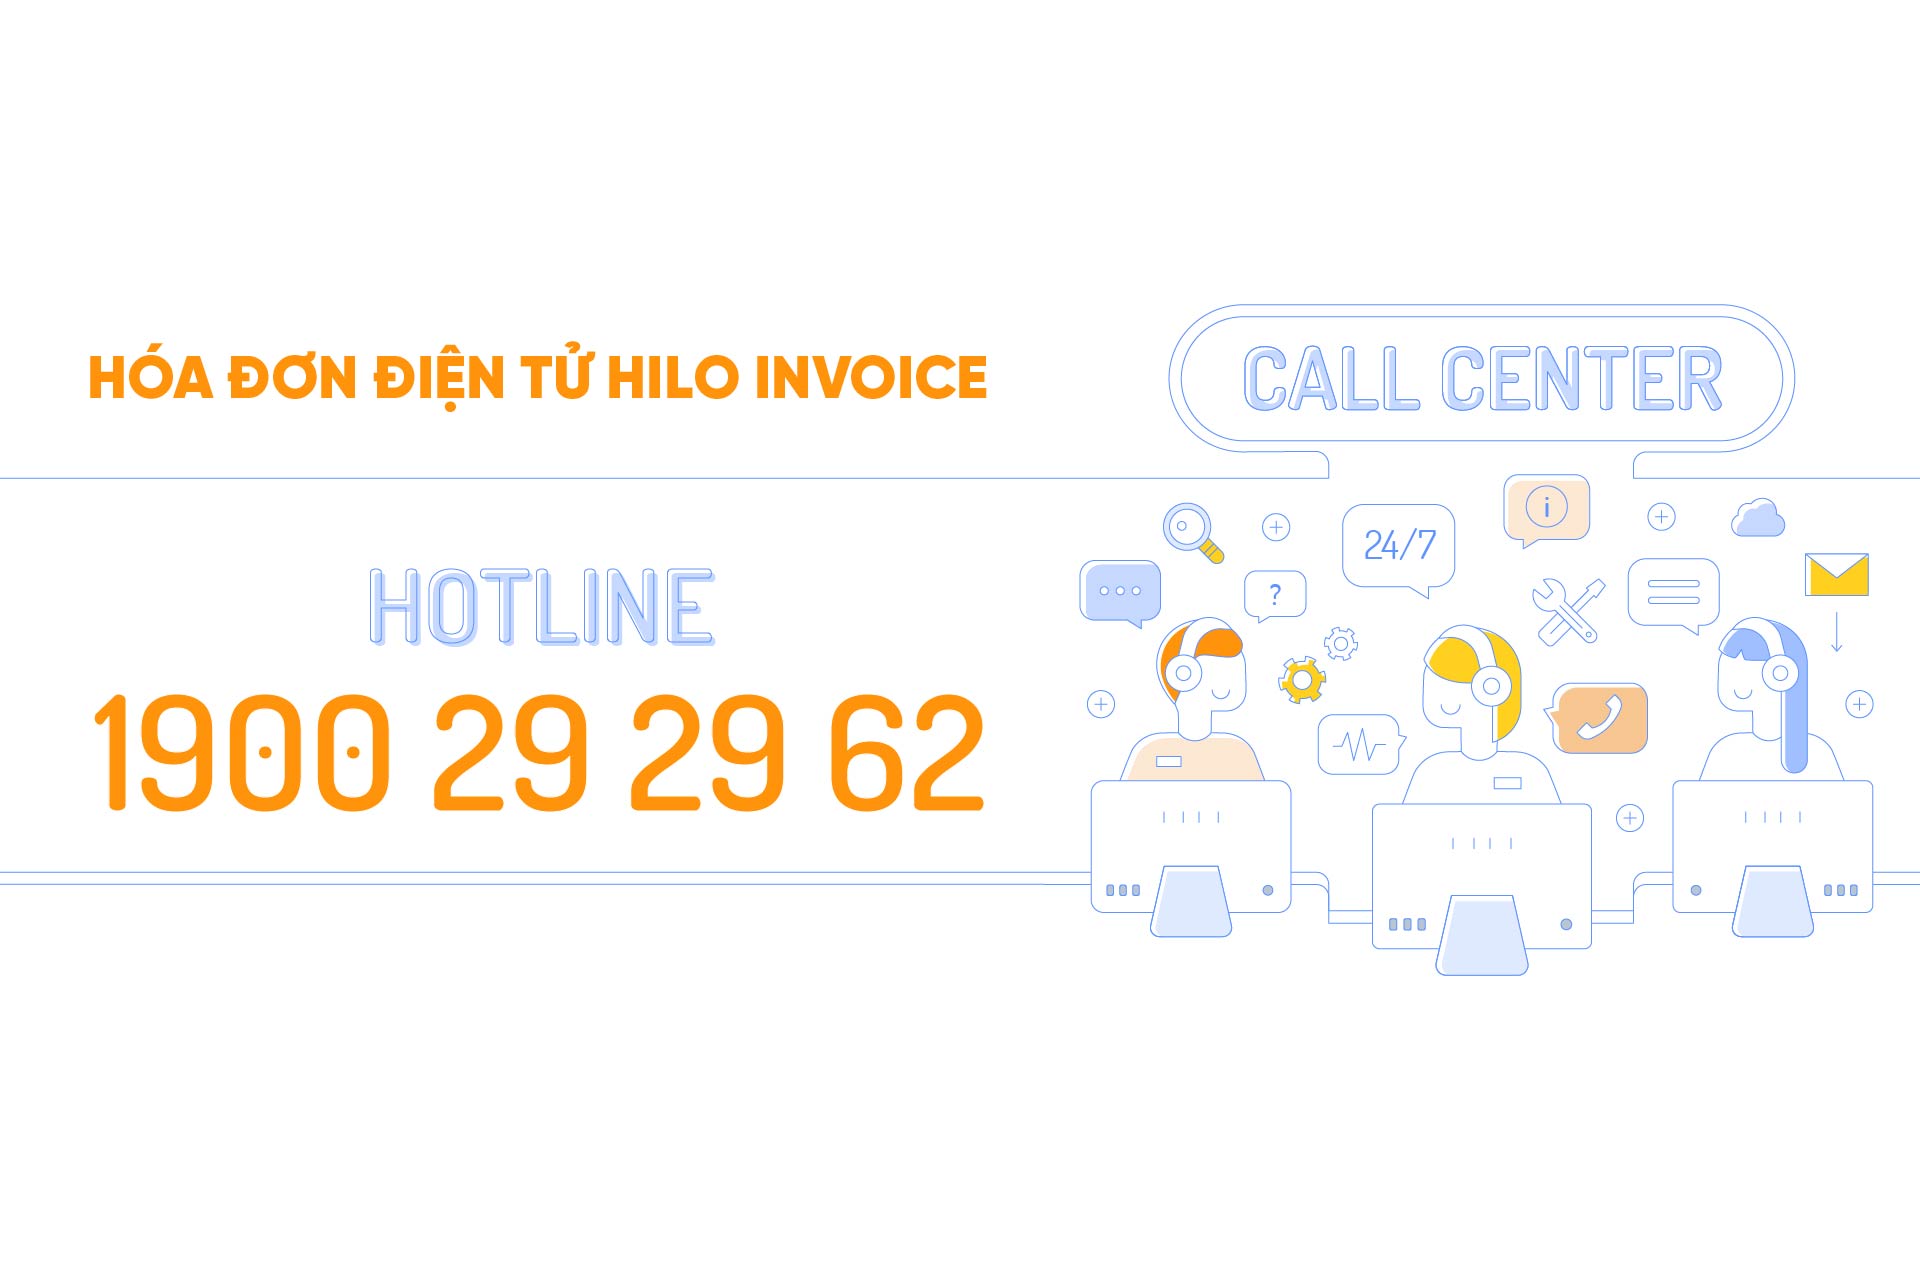 Một số phần mềm tích hợp với hóa đơn điện tử Hilo Invoice